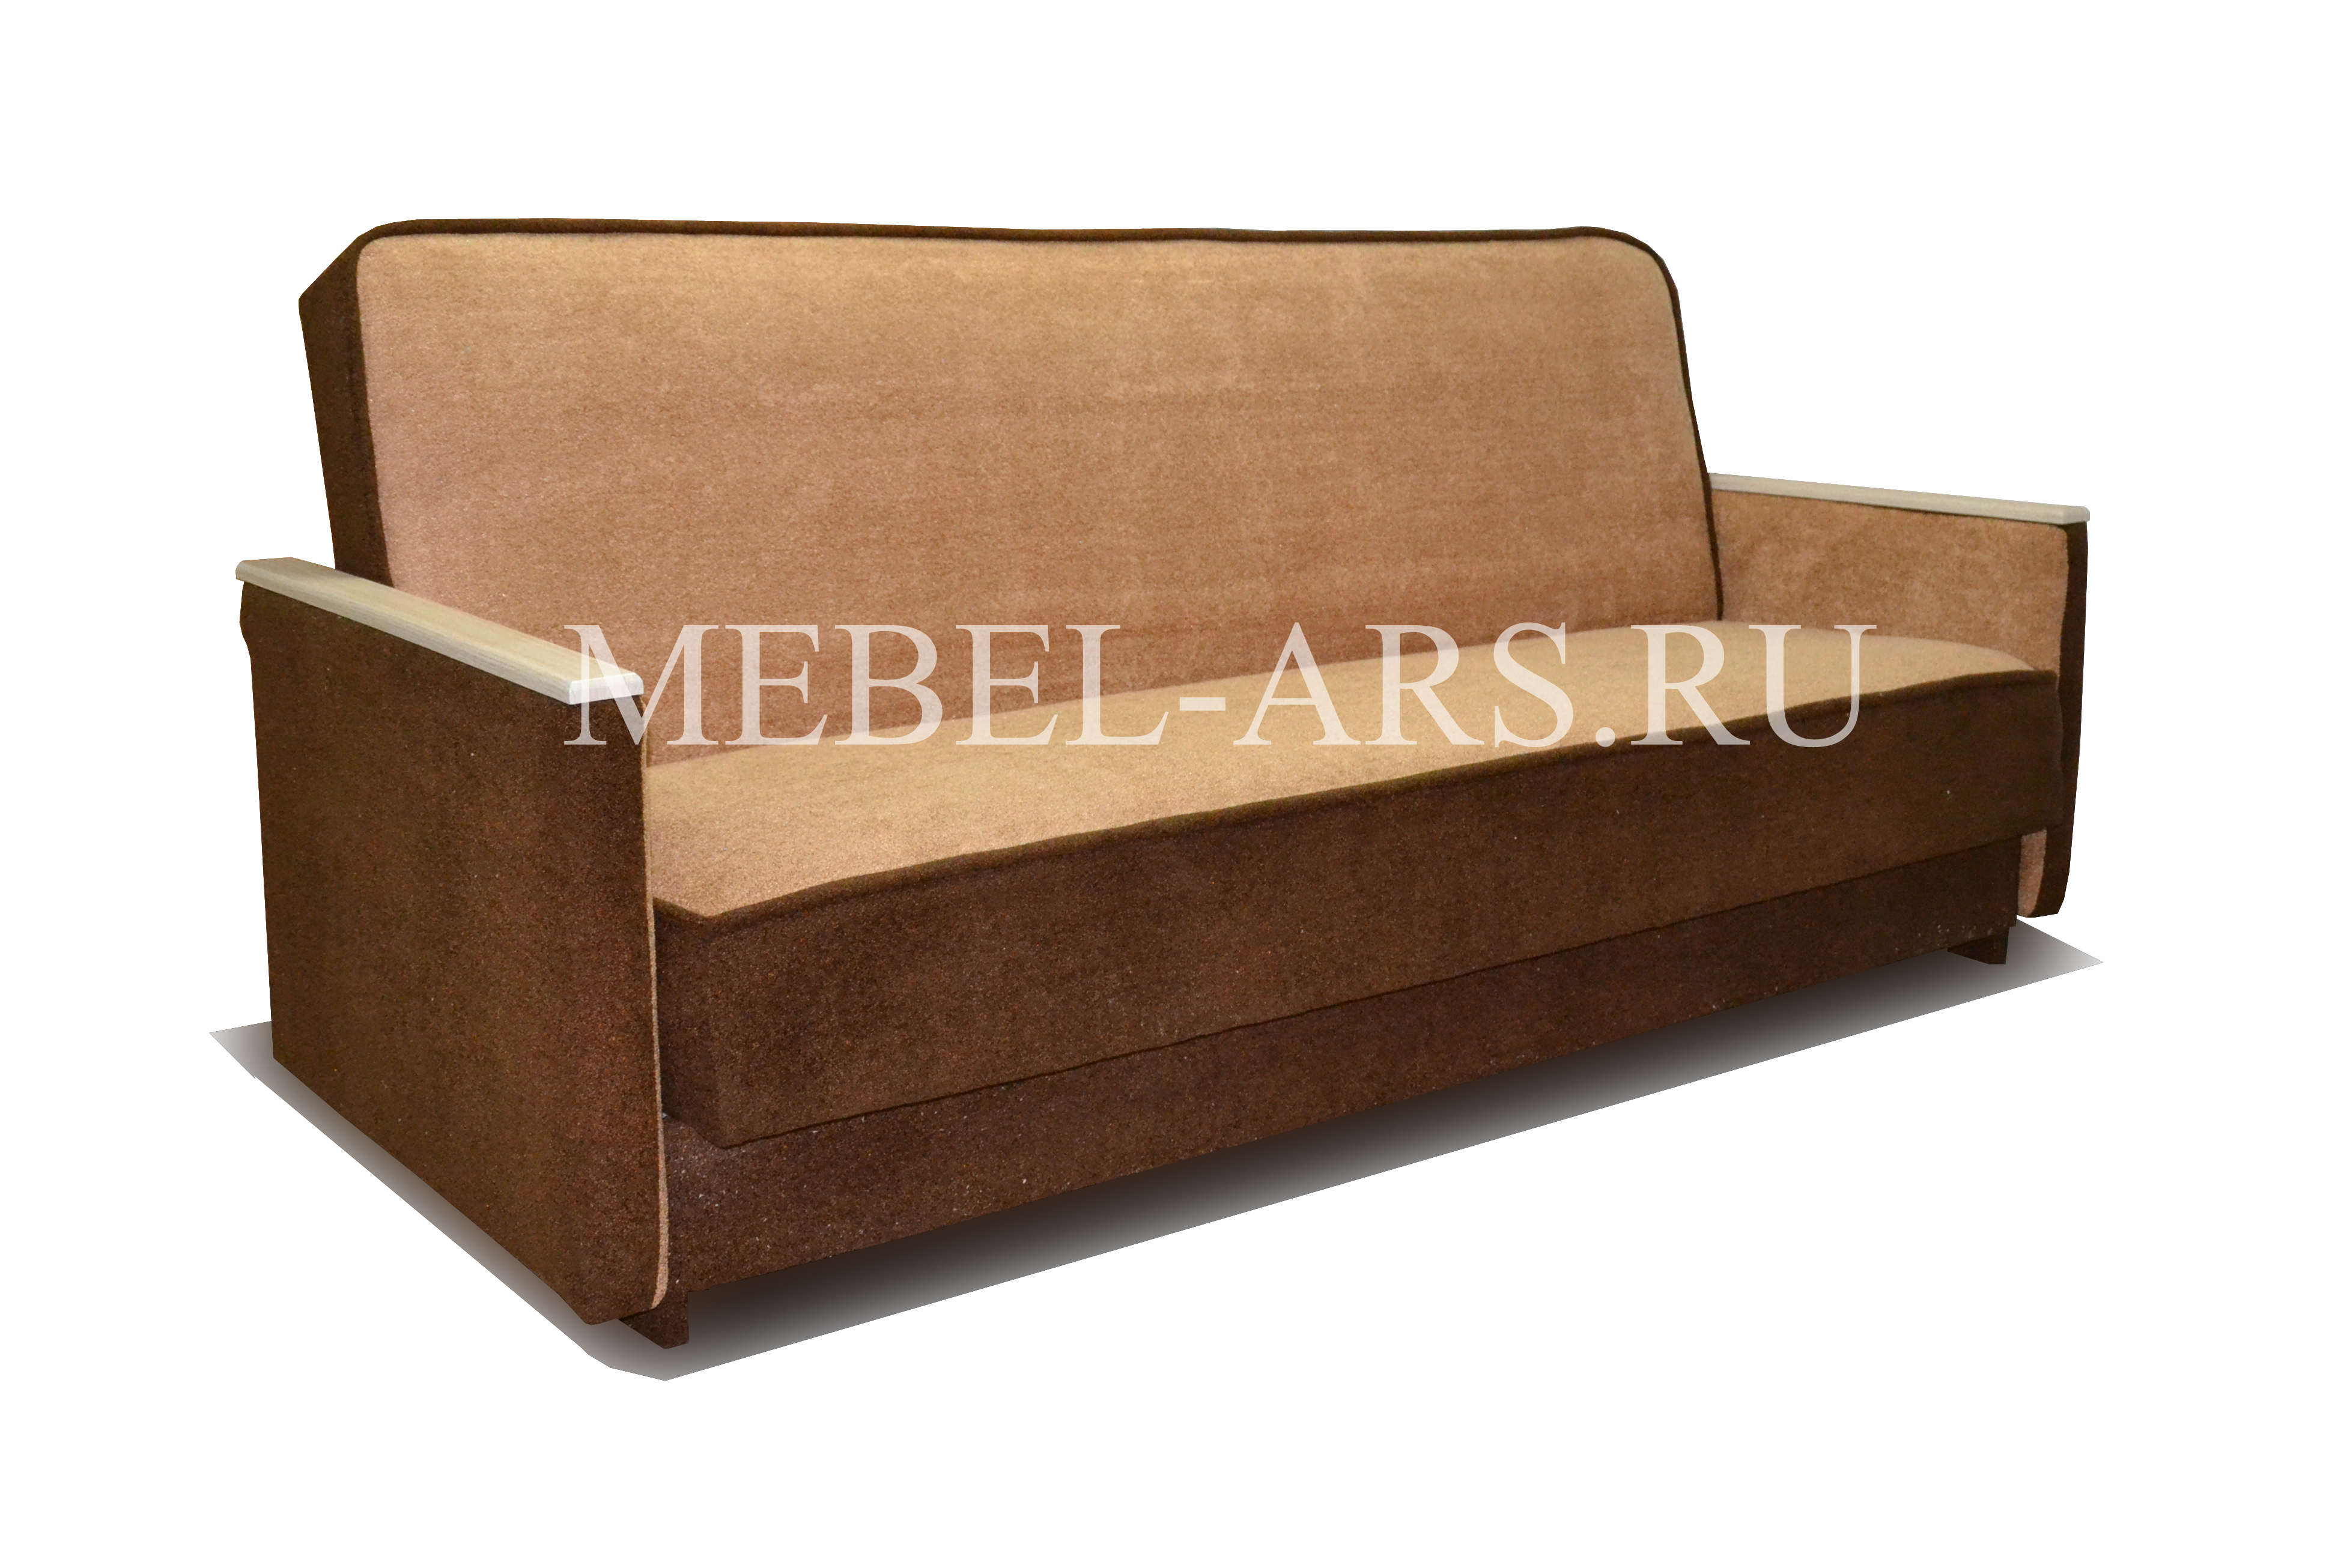 Купить дешевый диван в спб от производителя. Диван mebel-ARS книжка. Диван-кровать "книжка". Диван-книжка с пружинным блоком.